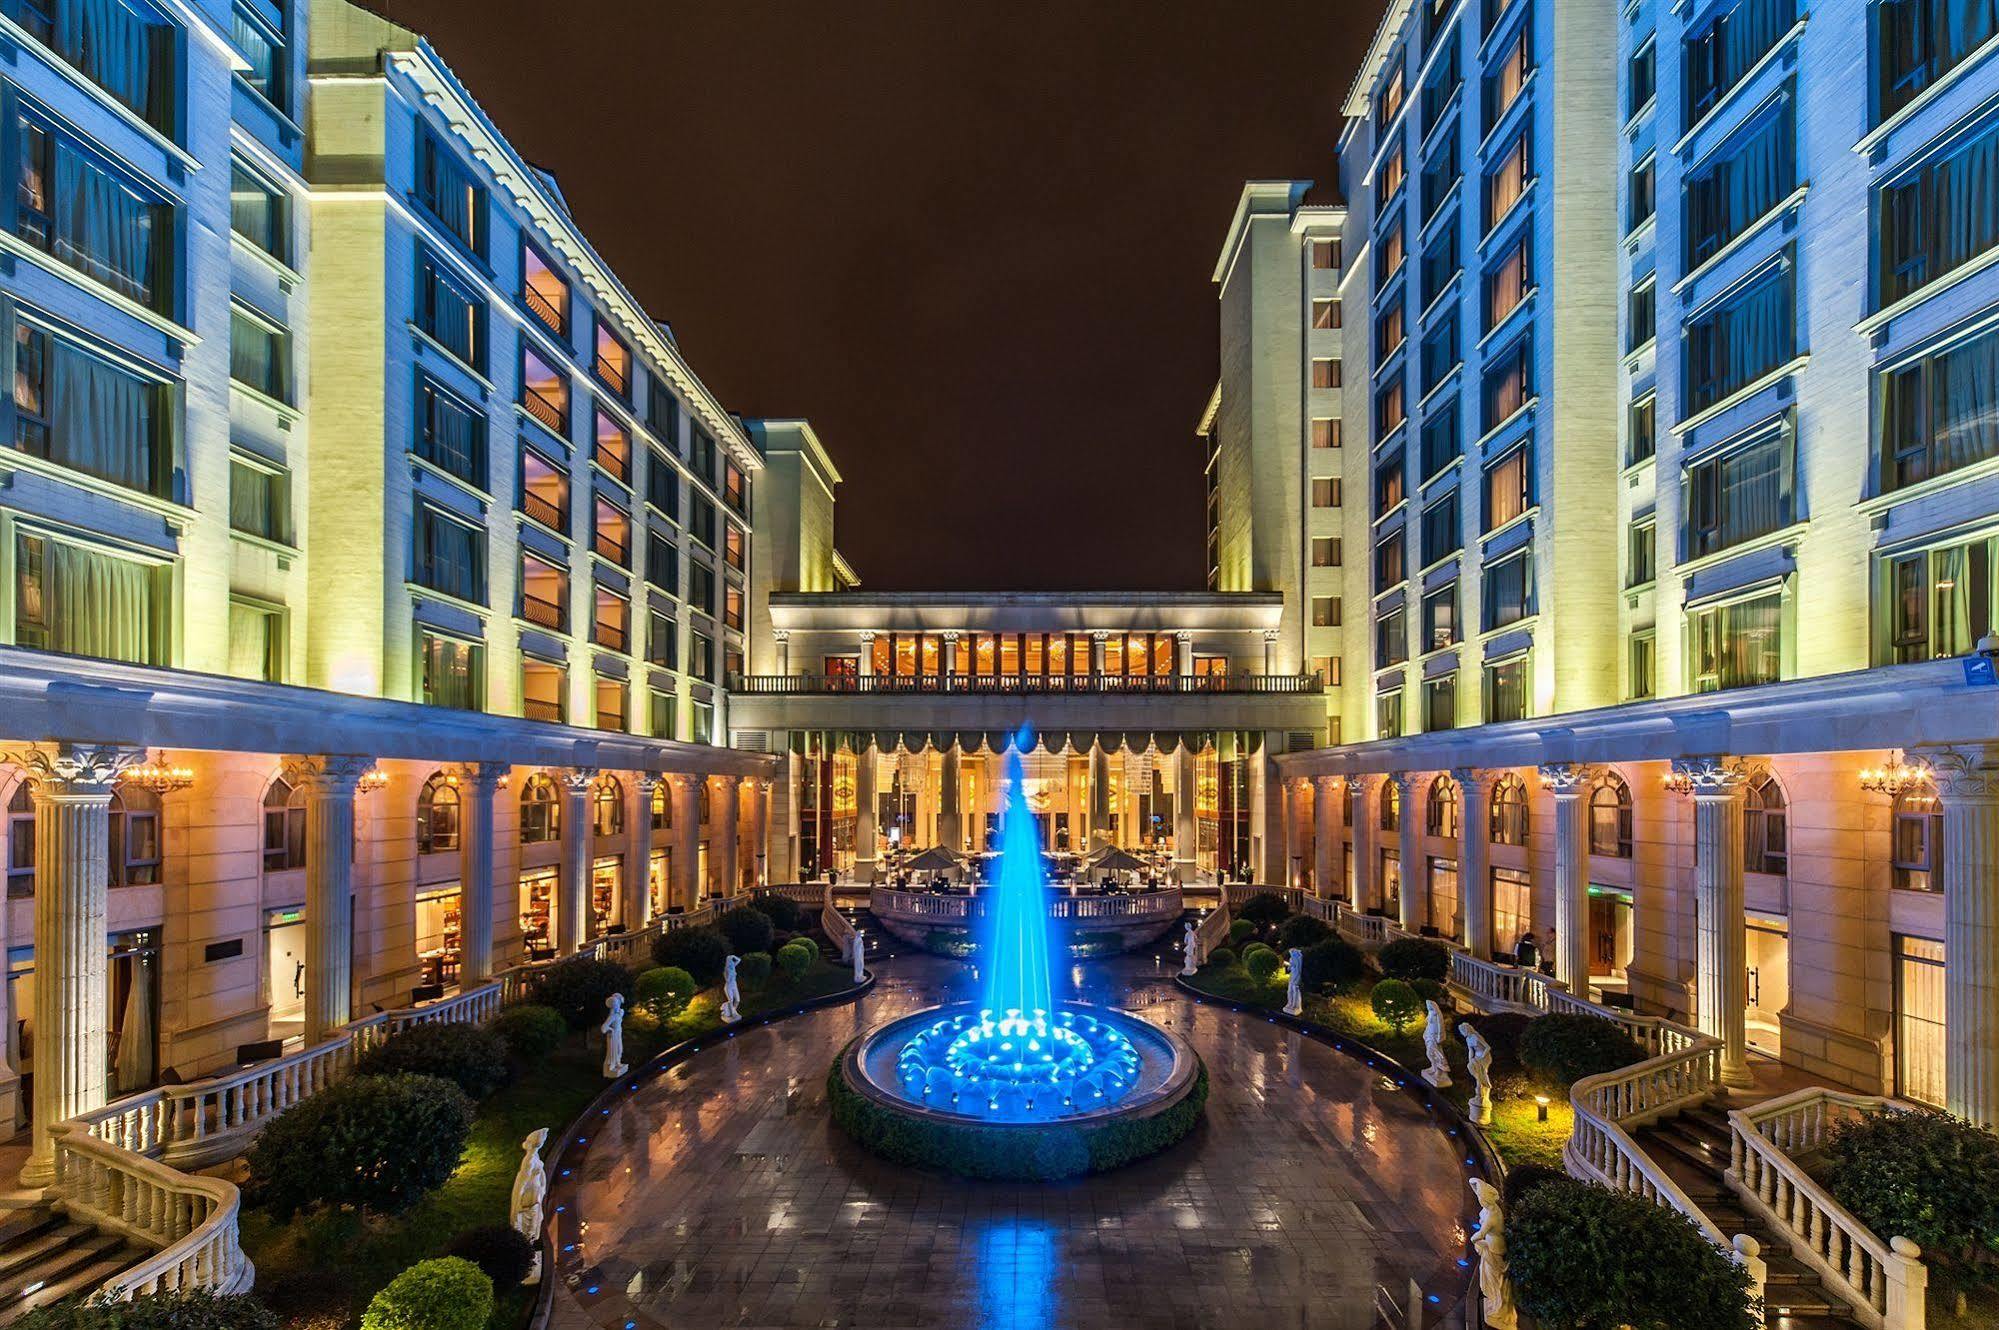 Guangzhou Weldon Hotel Buitenkant foto